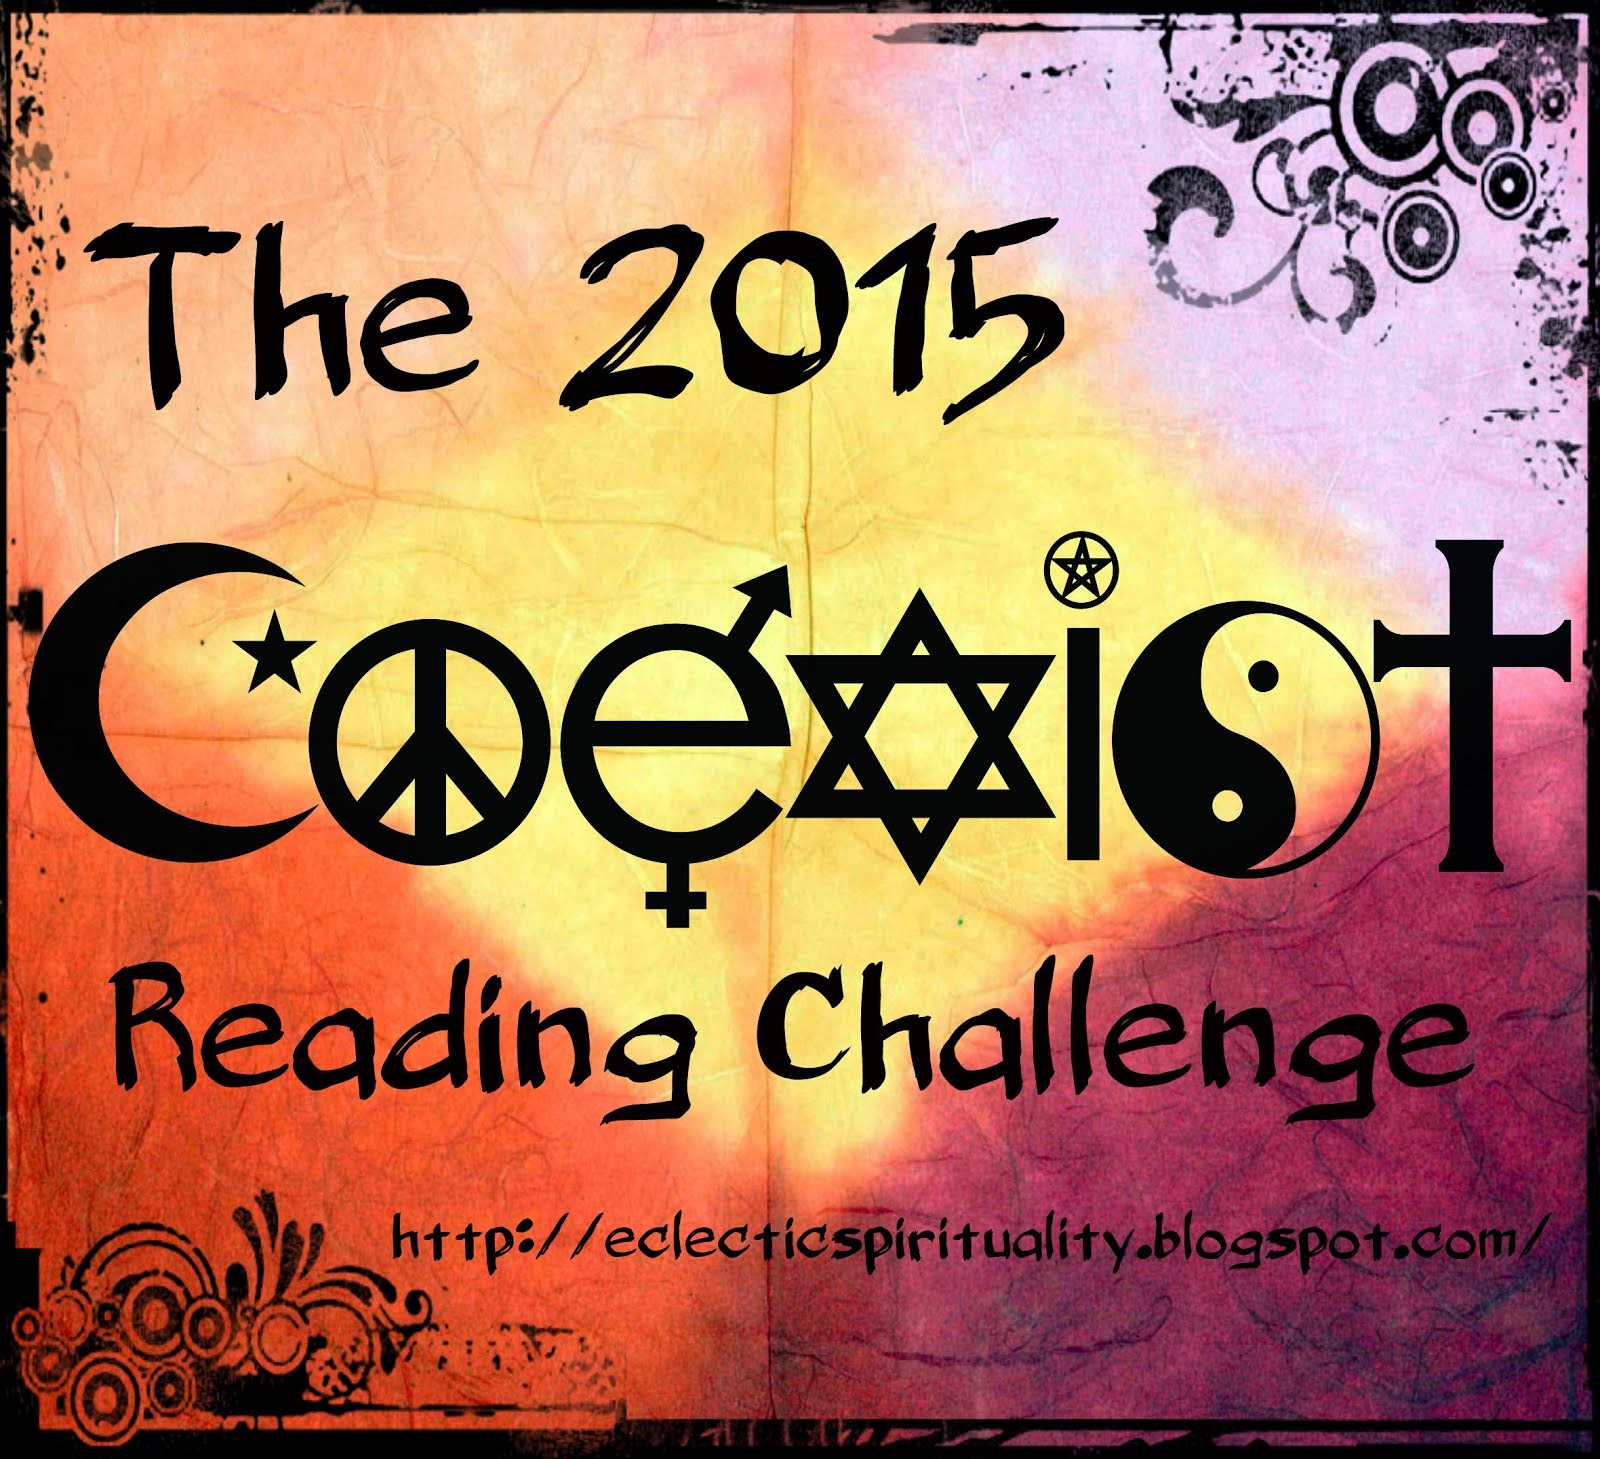 The 2015 Coexist Reading Challenge